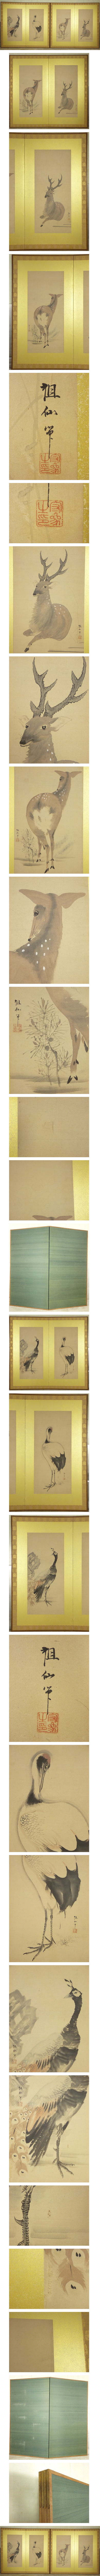 超激安格安森祖仙 孔雀 鶴 鹿の図 二枚折 屏風 一双 高さ 約174.5cm 紙本 肉筆 動物画 日本画 花鳥、鳥獣